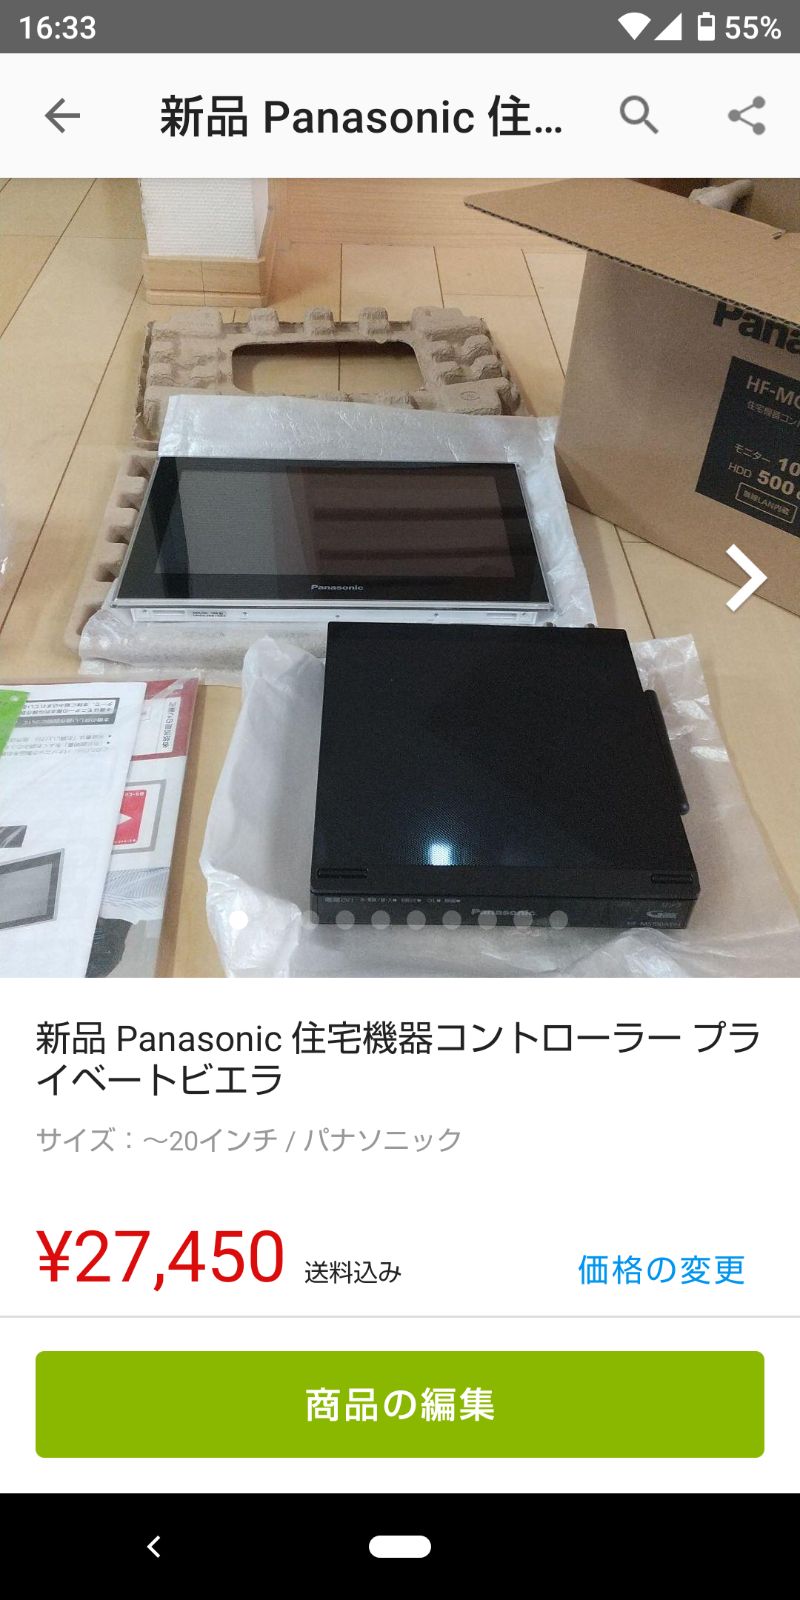 新品 Panasonic 住宅機器コントローラー プライベートビエラ